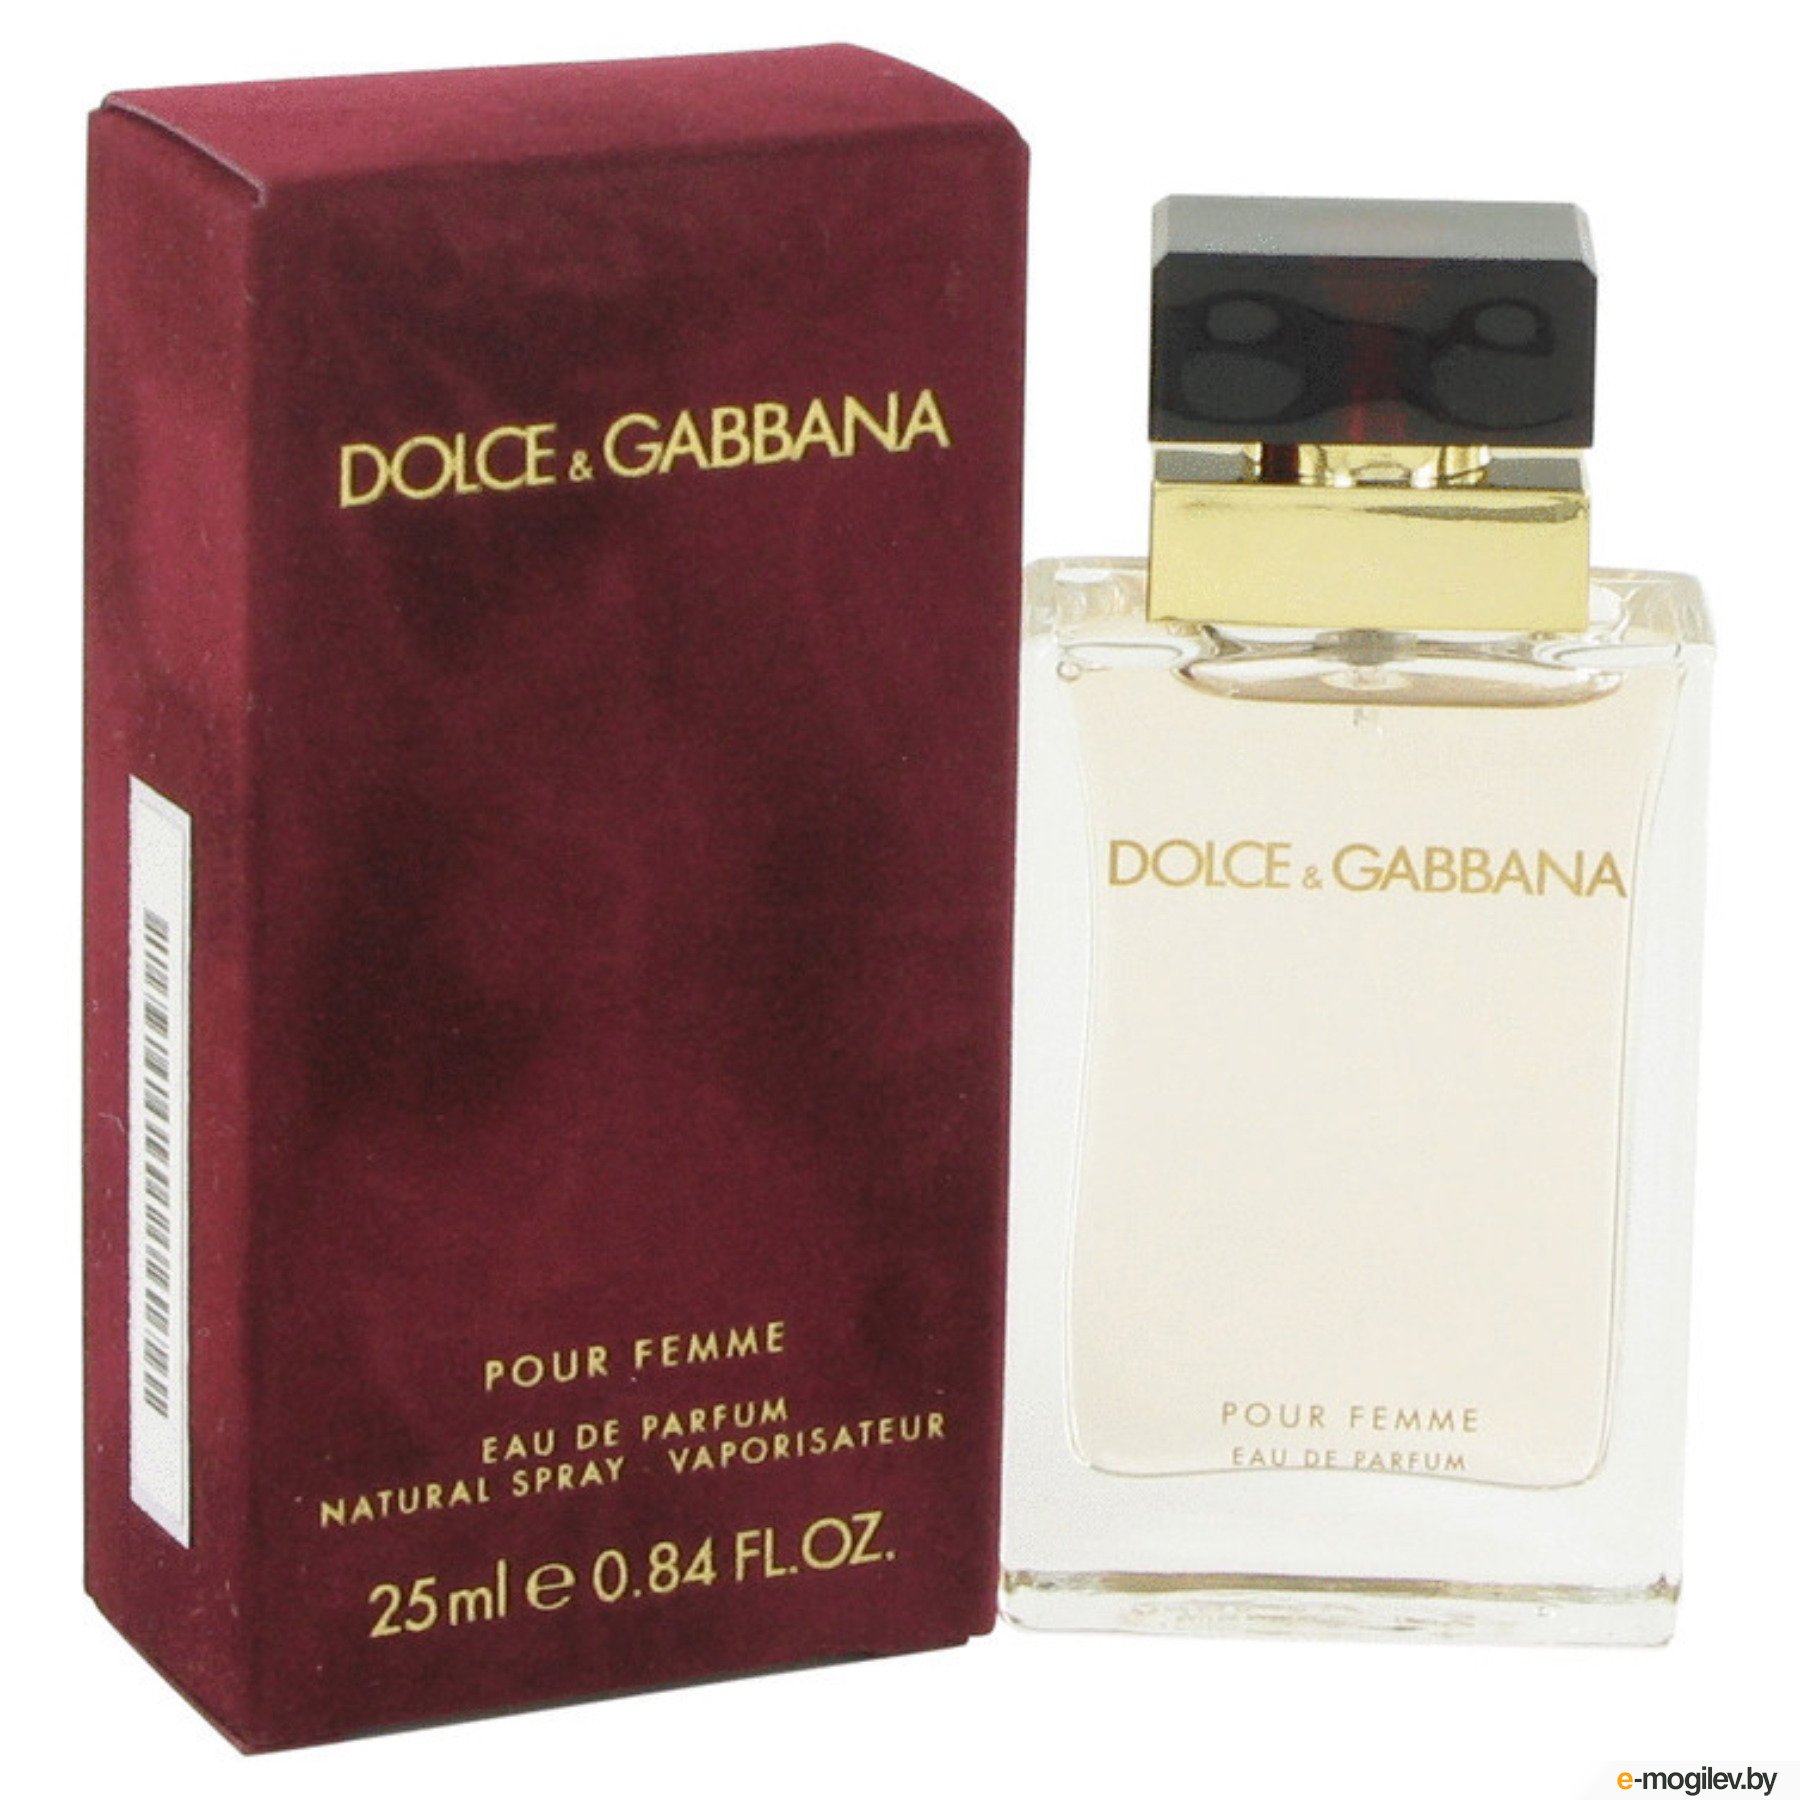 Дольче габбана цена фото. Dolce Gabbana pour femme 25ml. Dolce Gabbana pour femme 25 мл. Dolce & Gabbana pour femme 100 мл. Dolce & Gabbana by Dolce & Gabbana Eau de Parfum Spray 100ml.